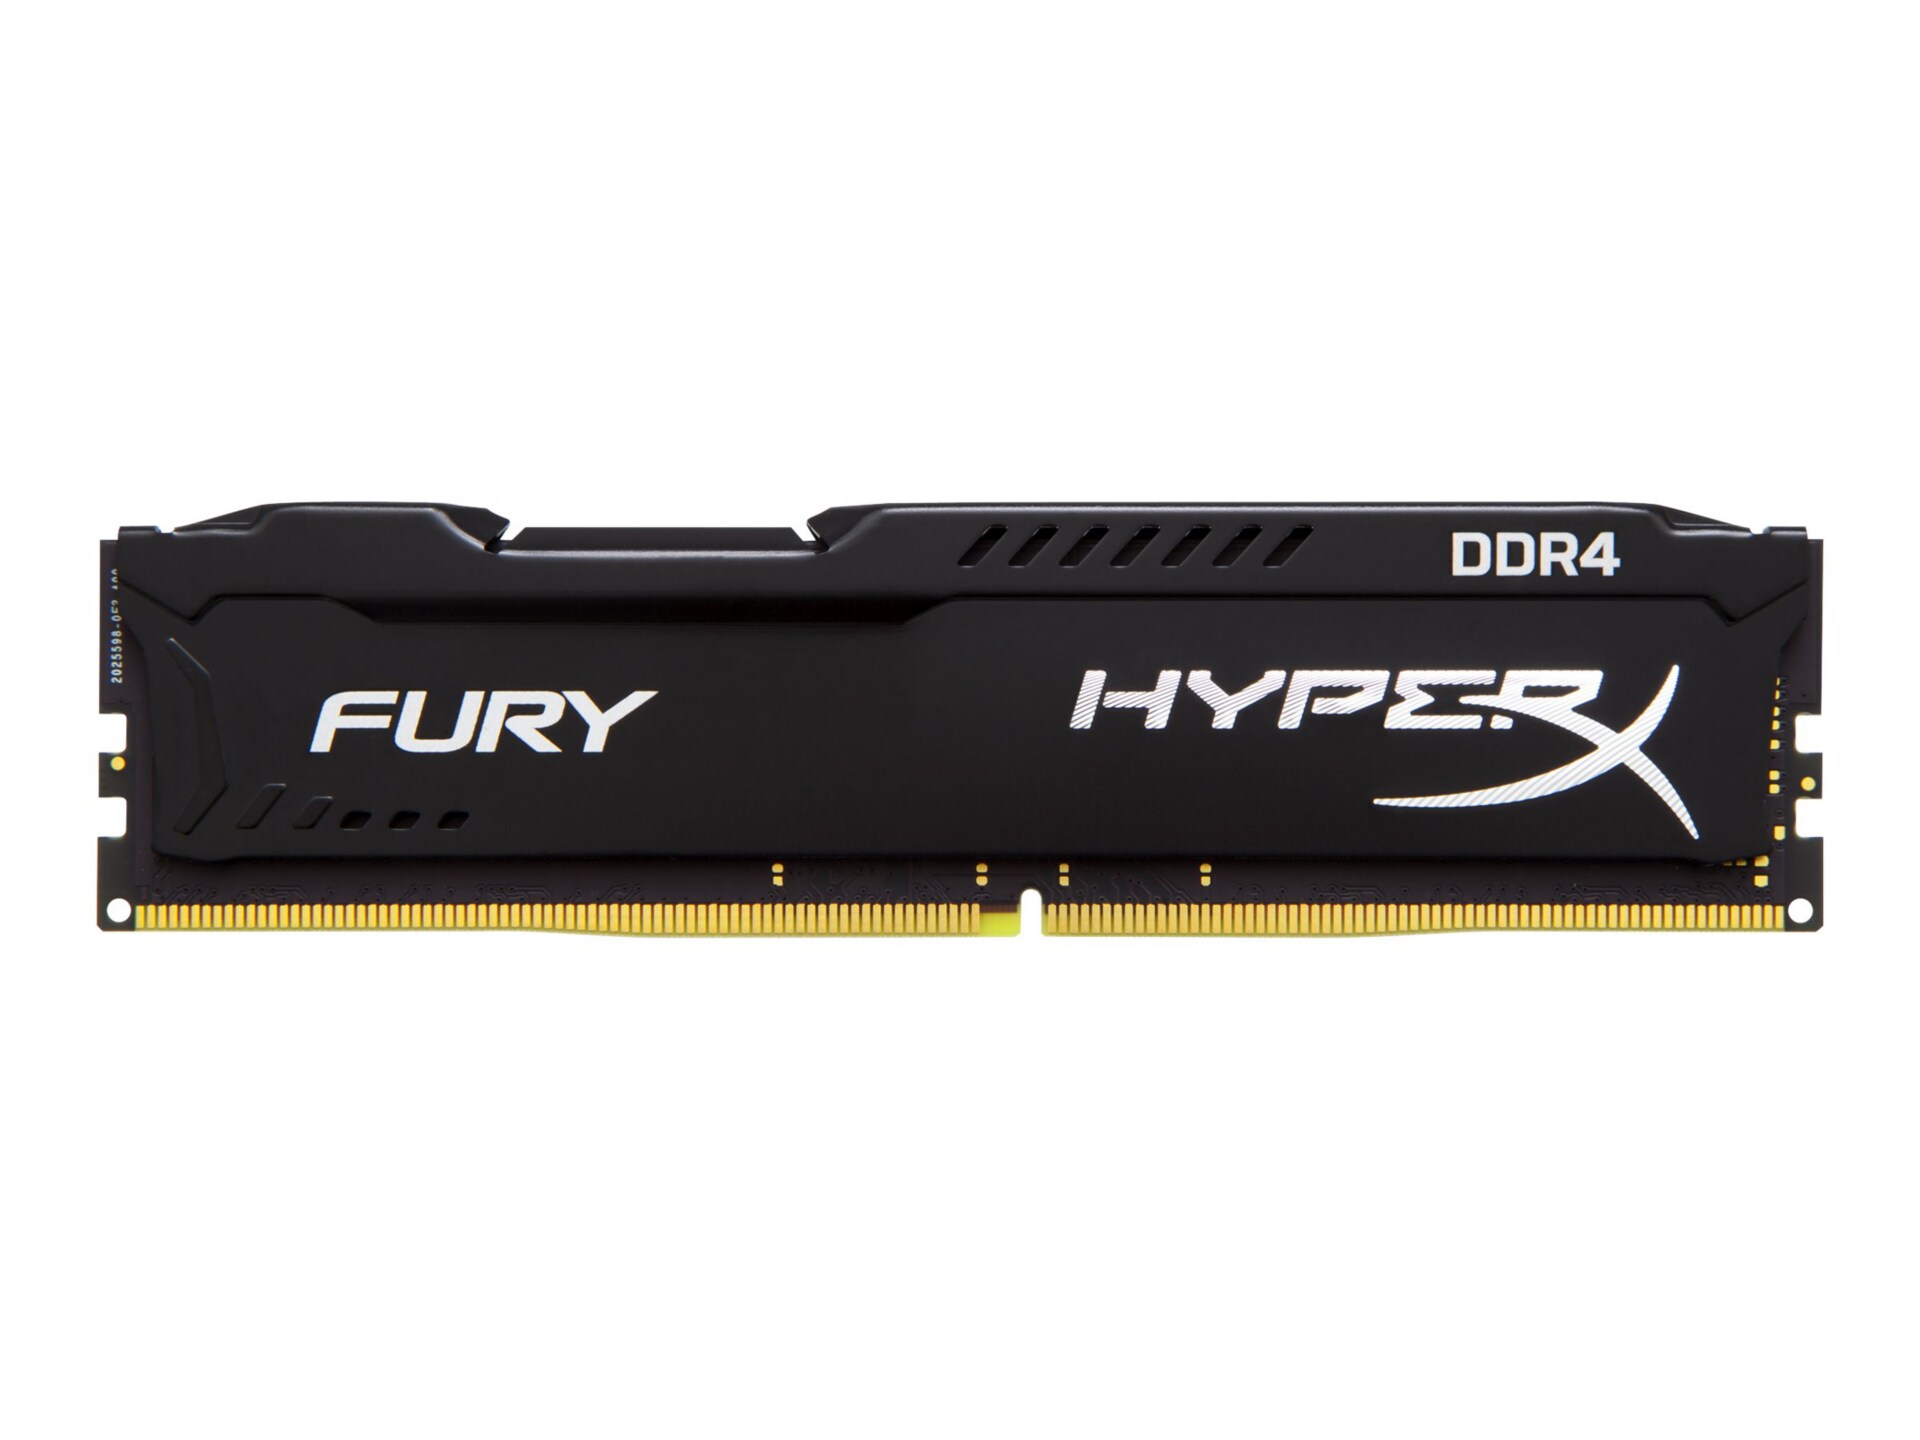 HyperX FURY - DDR4 - 8 GB - DIMM 288-pin - unbuffered